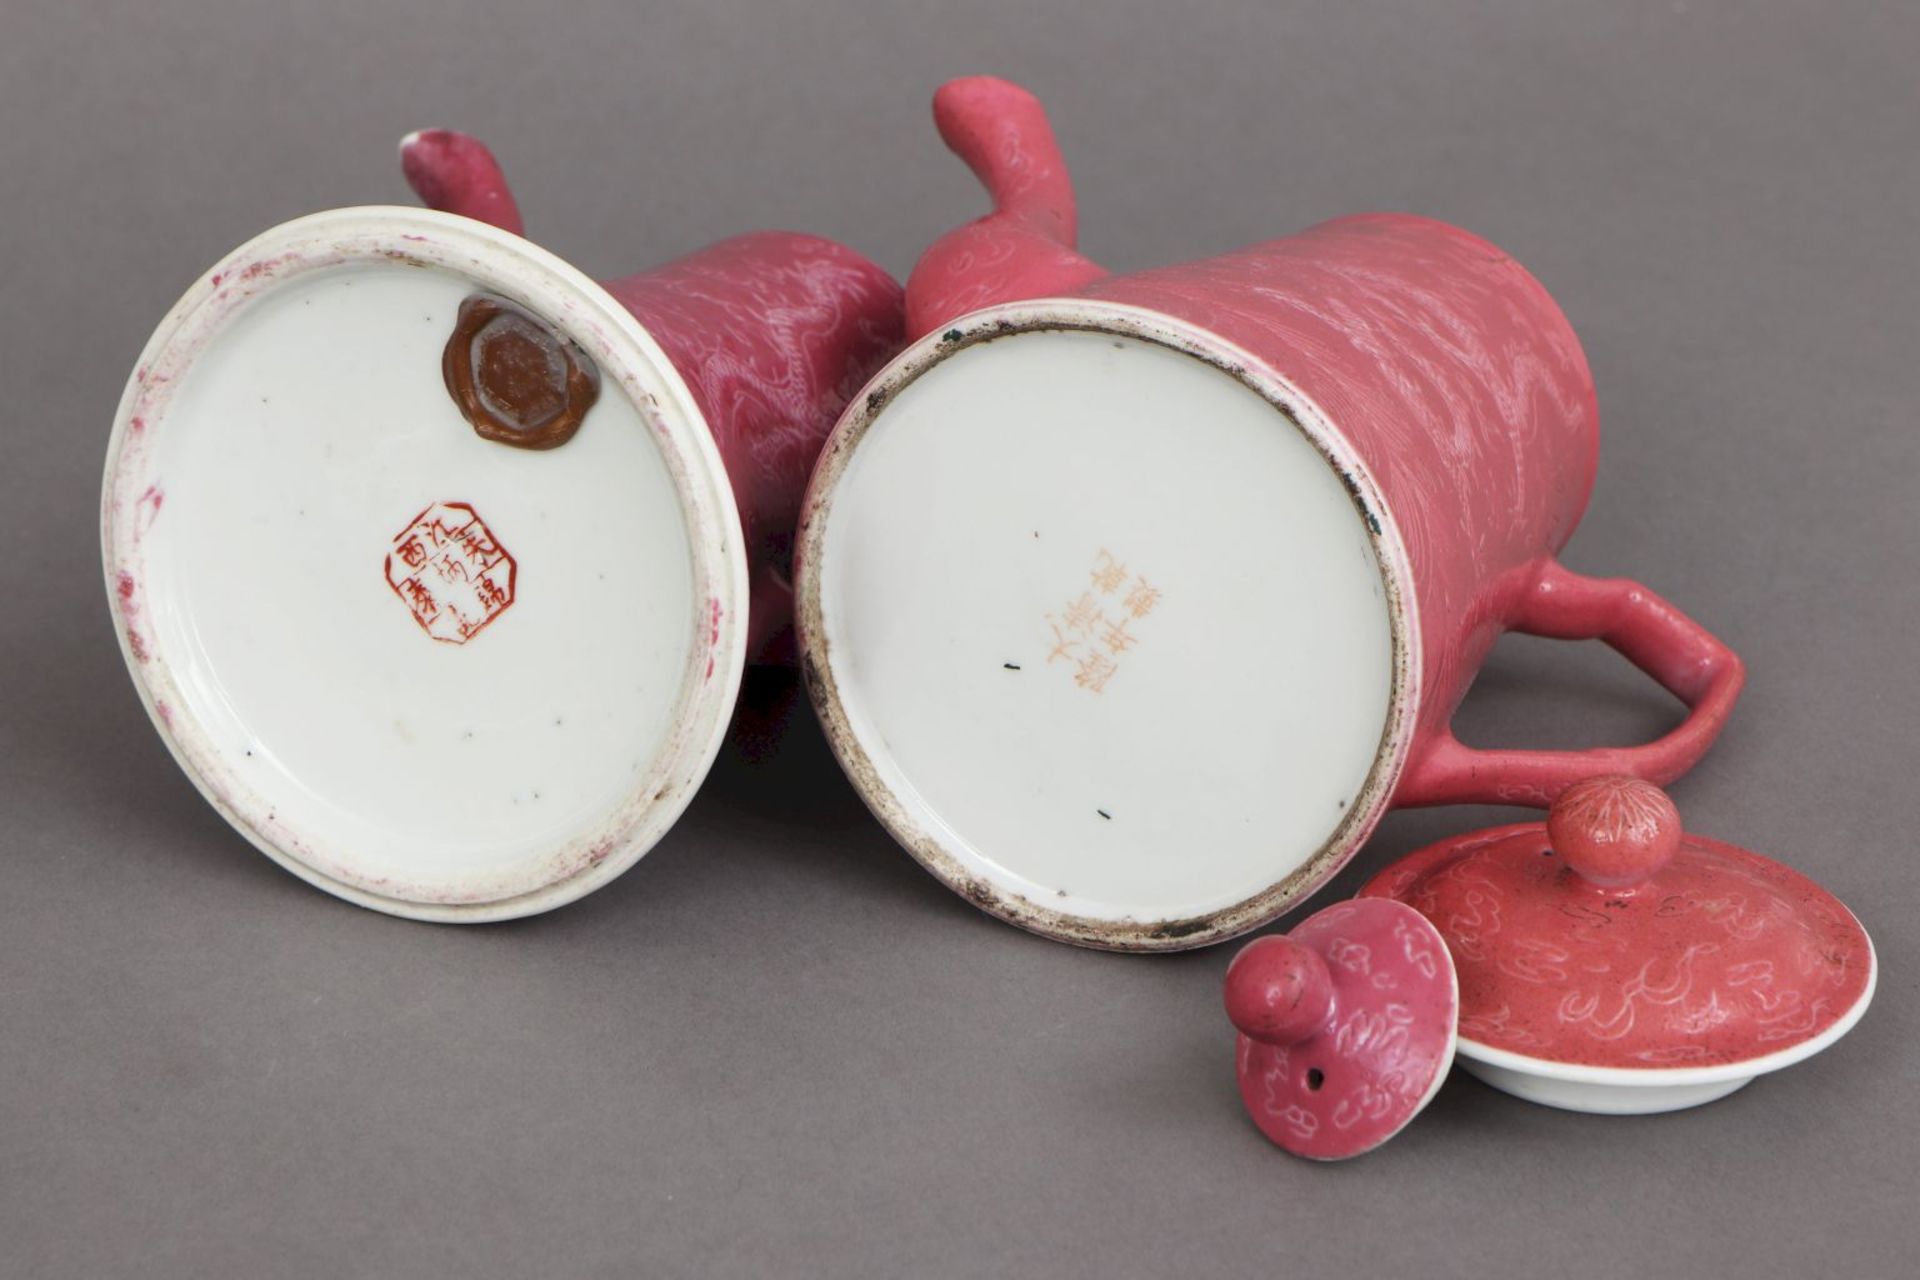 2 chinesische Porzellankannen mit rosafarbener Glasurunterschiedliche Formen und Ausführungen, - Bild 3 aus 3